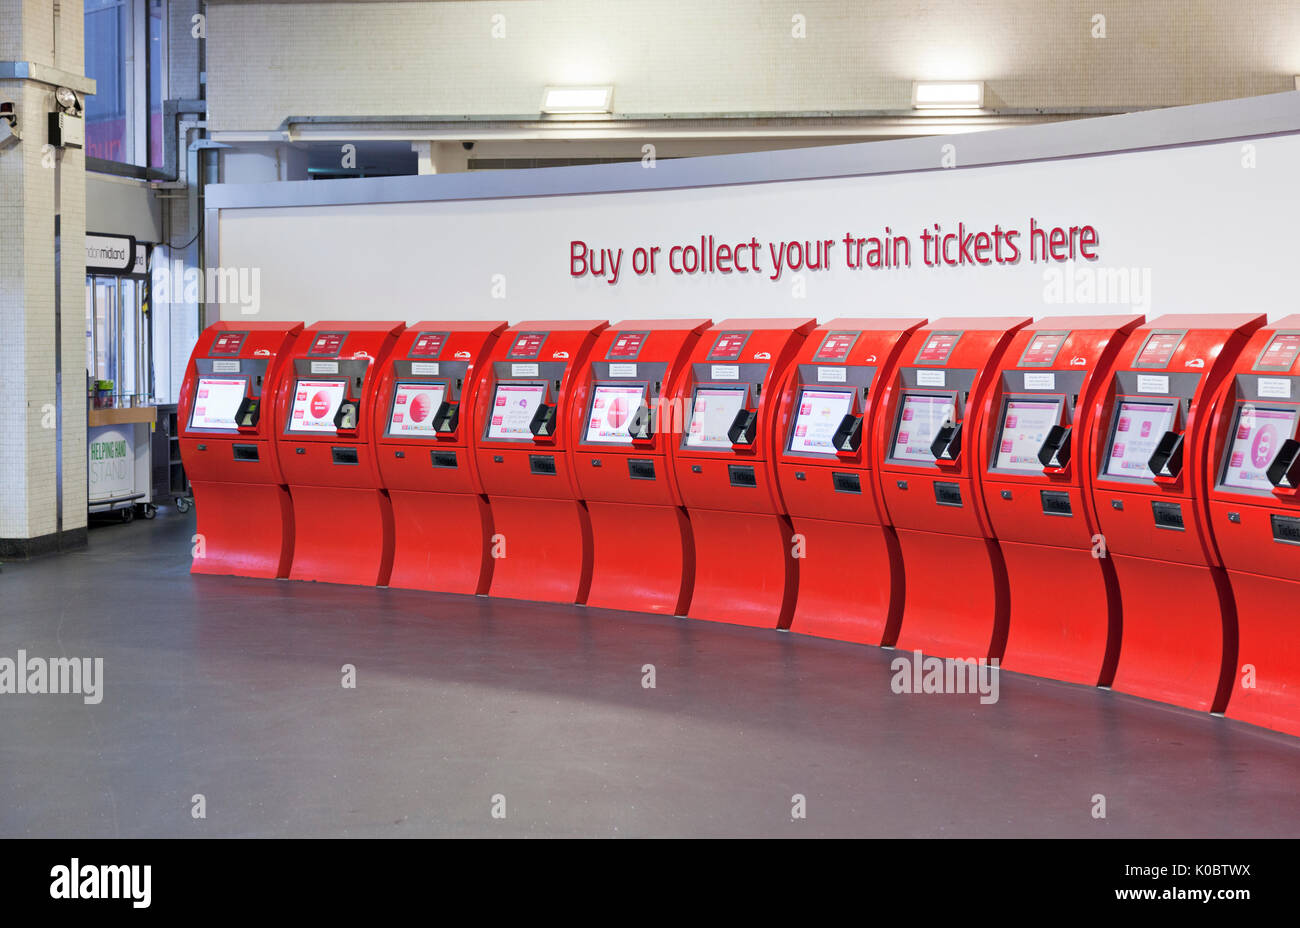 Achetez ou récupérez vos billets de train ici, rangée de la machine à billets de Virgin trains en libre-service à la gare d'Euston. Banque D'Images